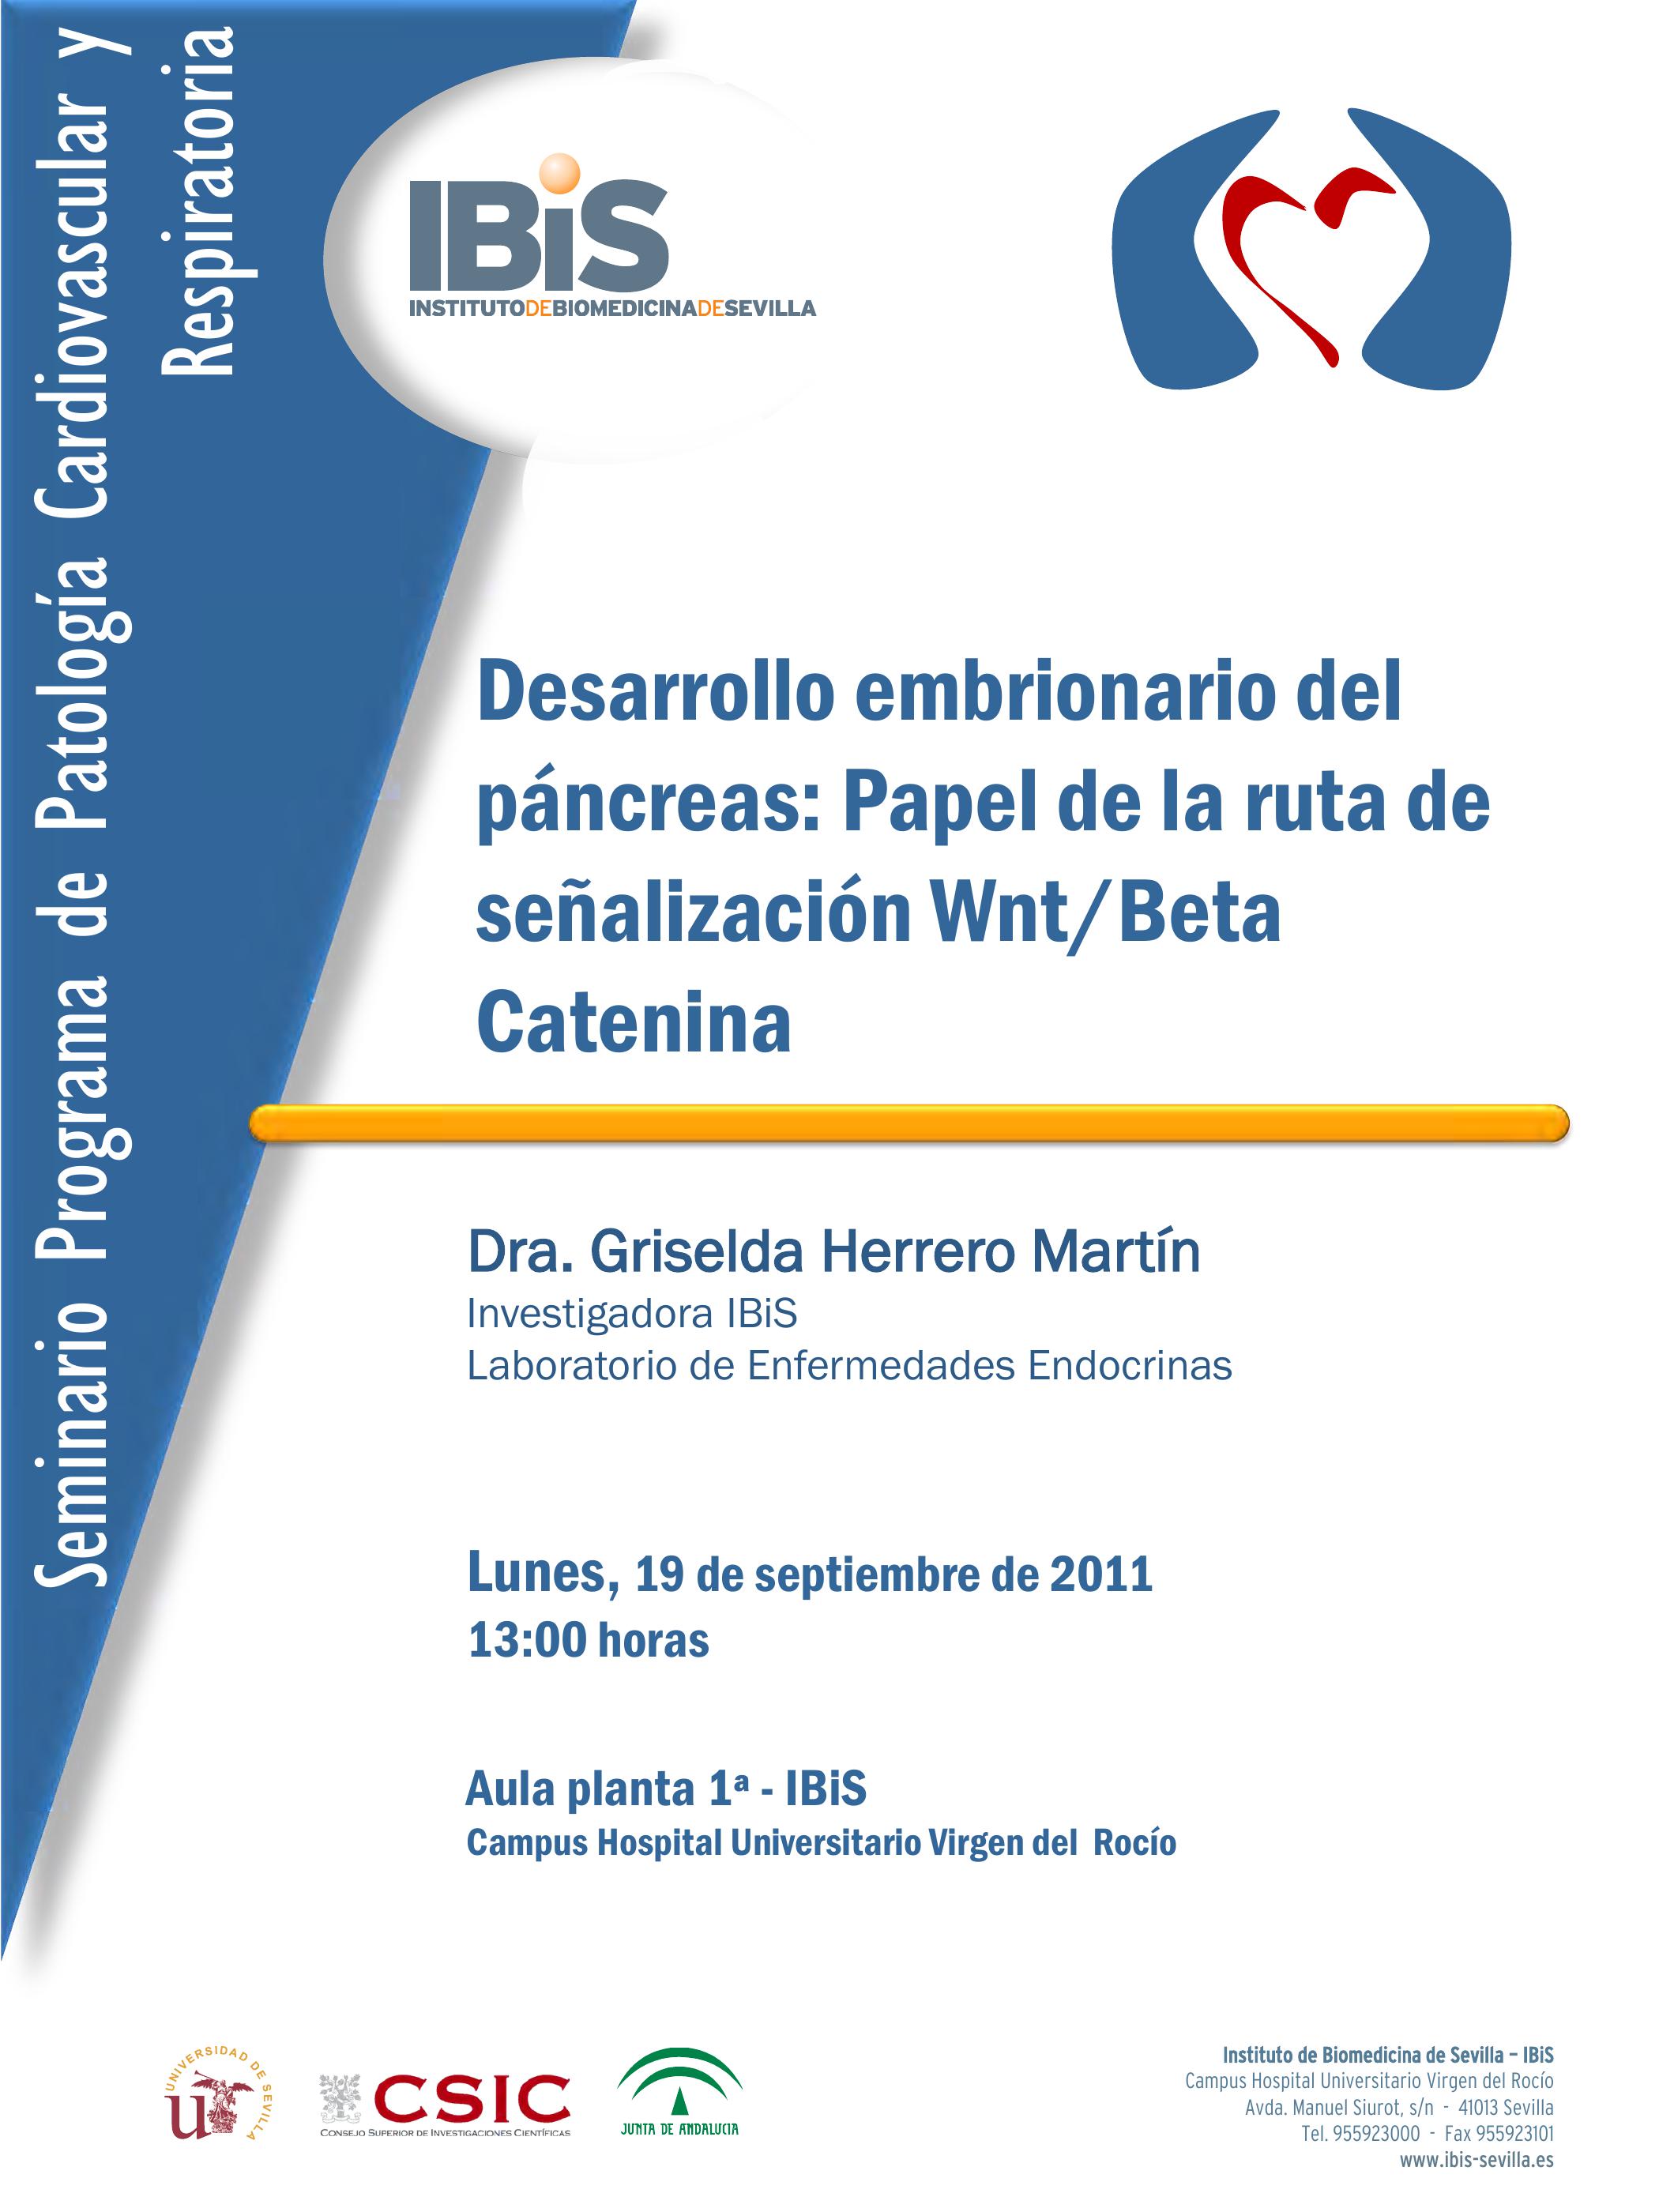 Poster: Desarrollo embrionario del páncreas: Papel de la ruta de señalización Wnt/Beta Catenina.